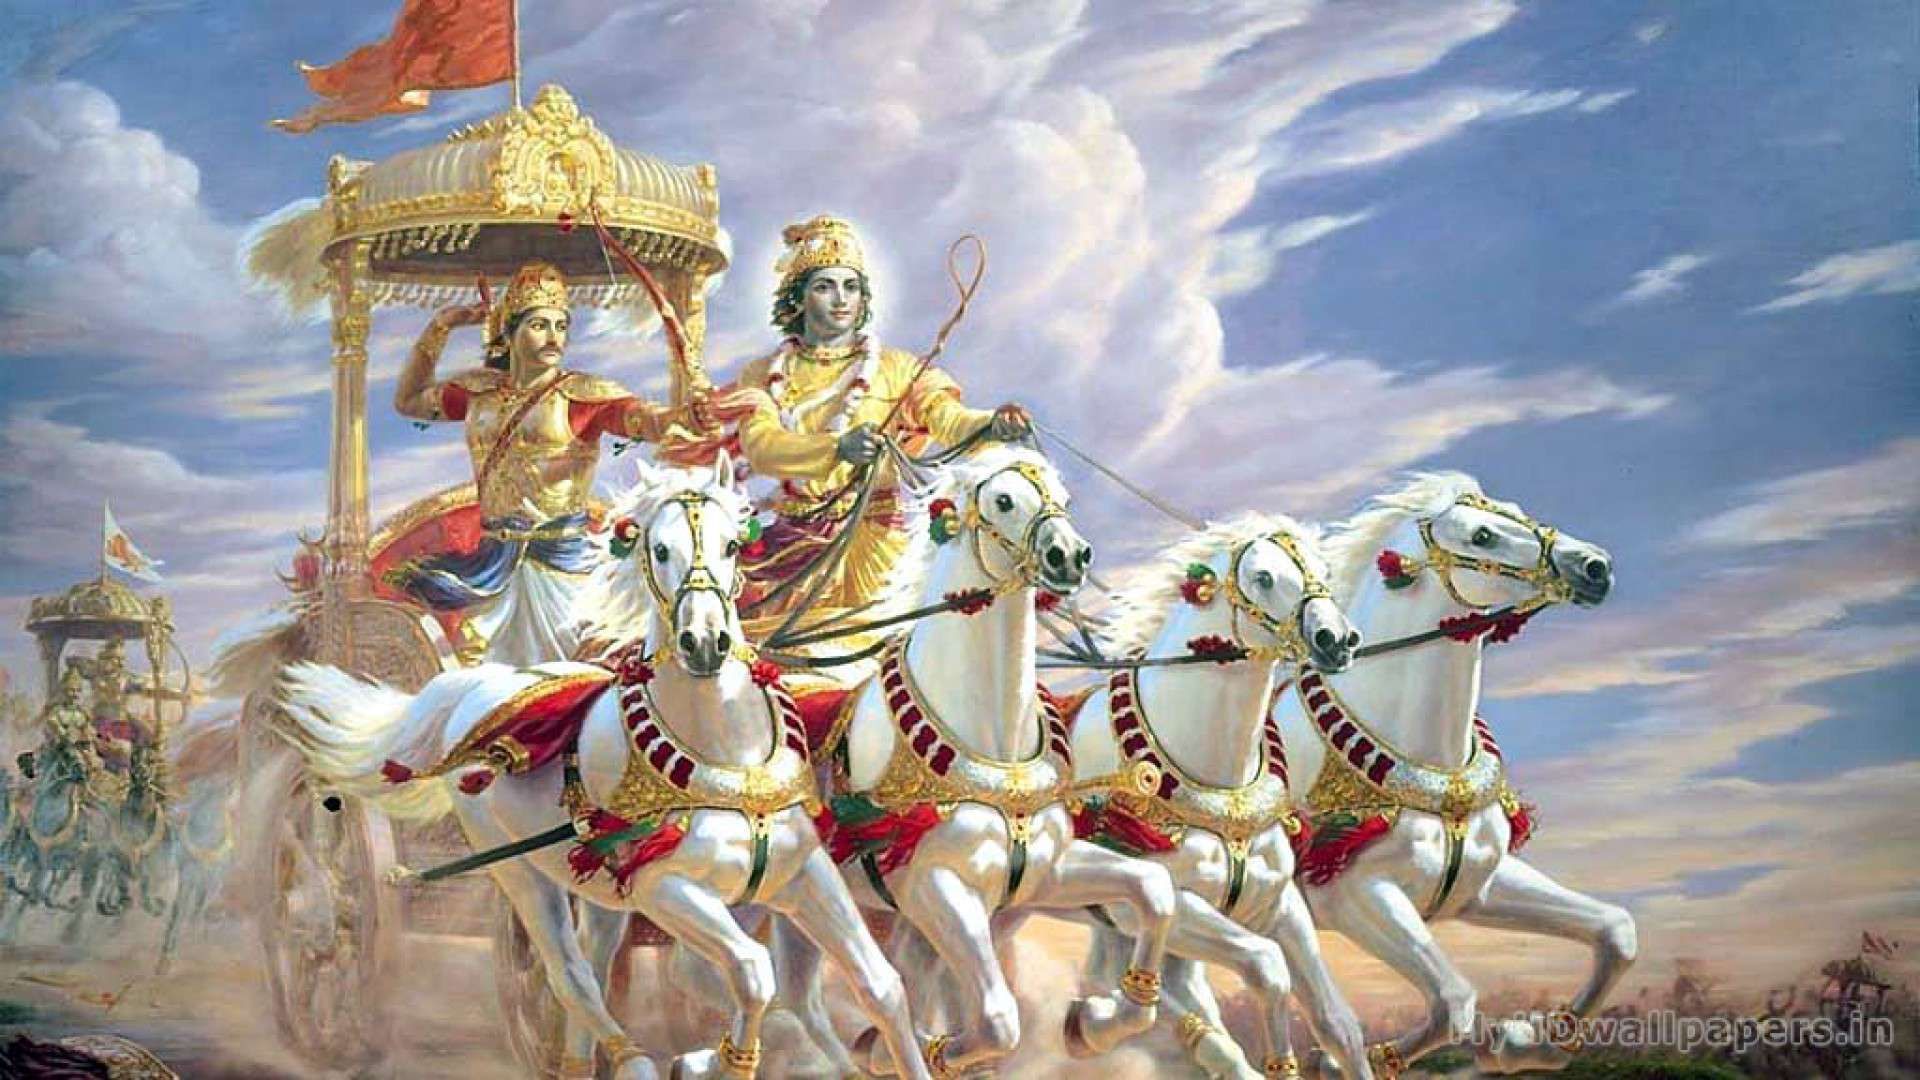 High Resolution Hindu Gods Hd - 1920x1080 Wallpaper ...